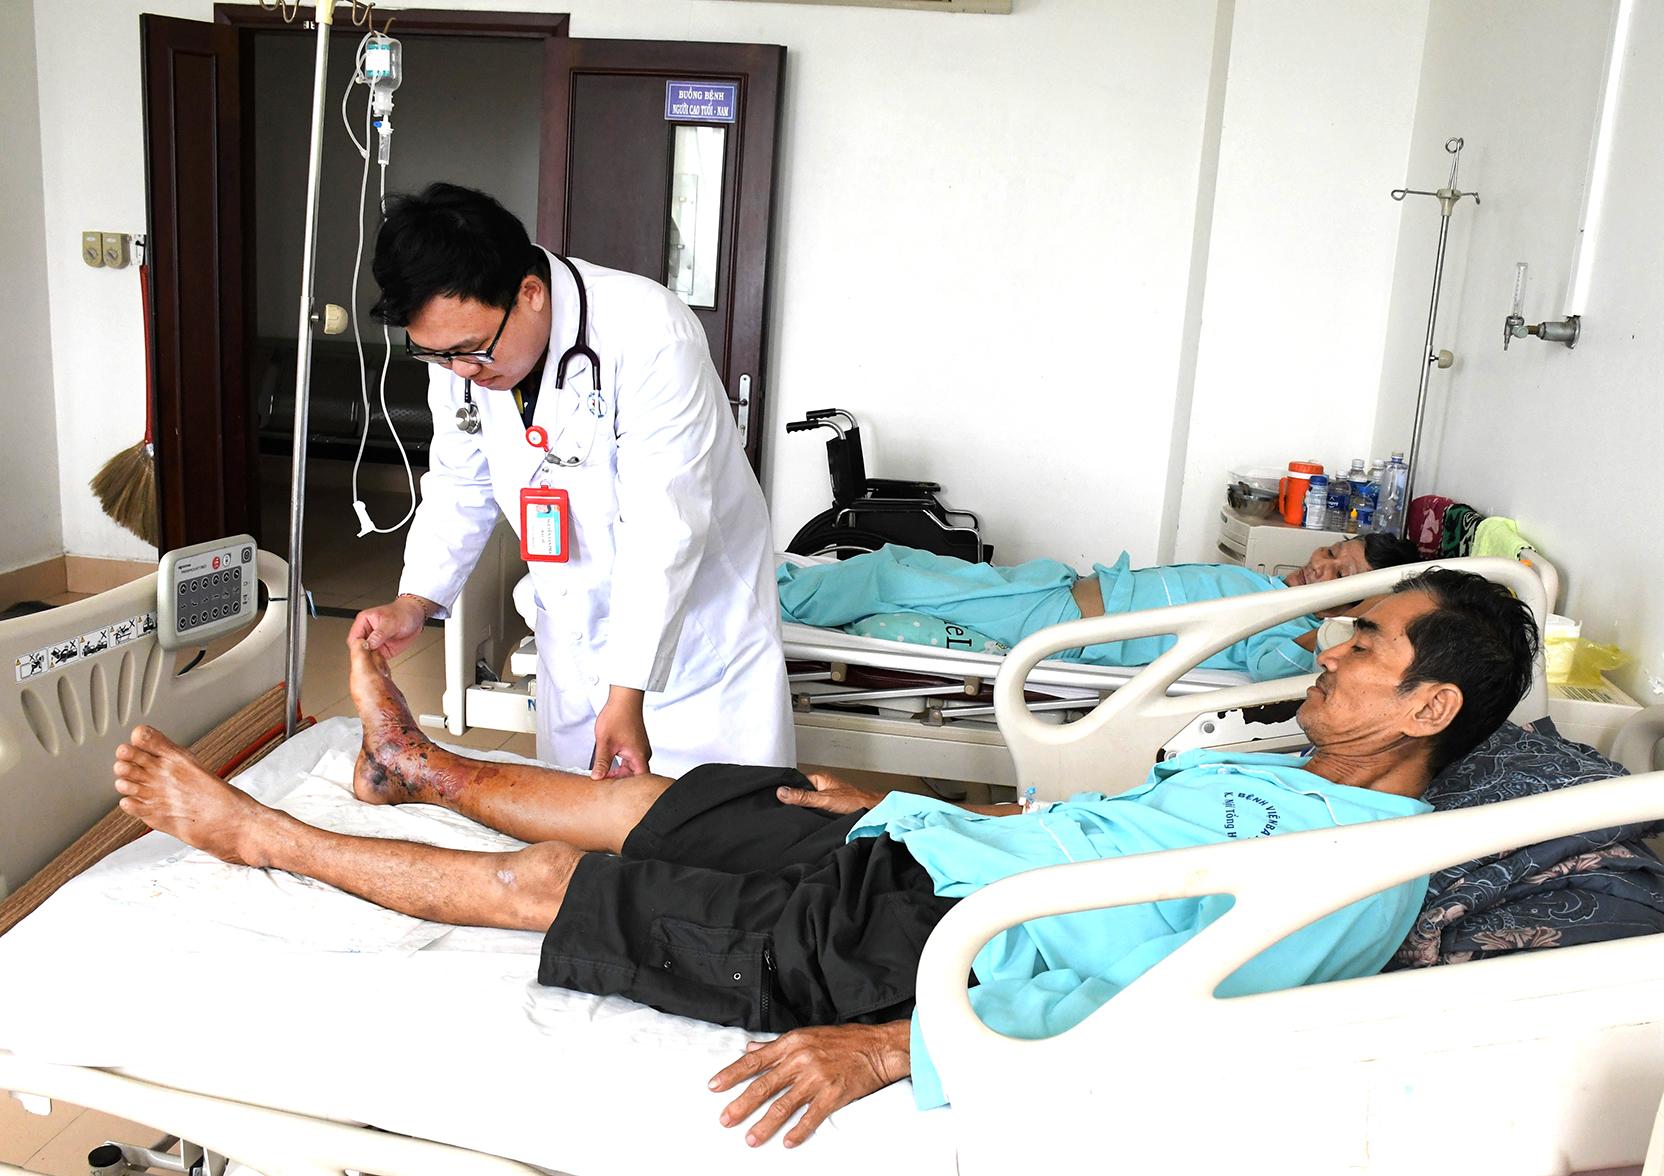 Bác sĩ Nguyễn Tấn Phát, Khoa Hồi sức tích cực - Chống độc (Bệnh viện Bà Rịa) kiểm tra lại vị trí bị rắn cắn cho người bệnh.